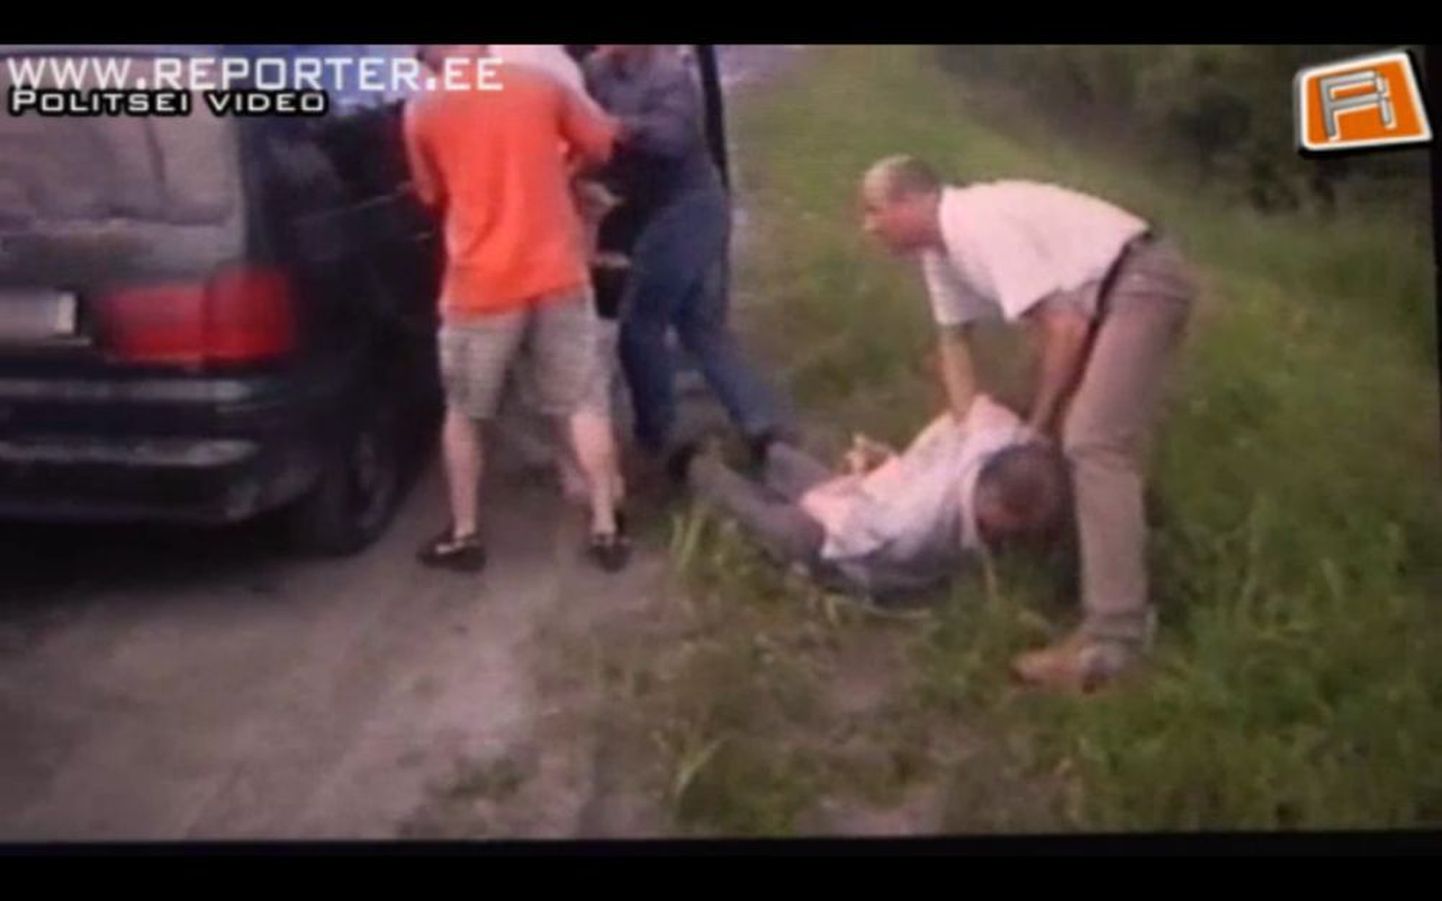 Politsei video: Johannes Lease kinnipidamine.